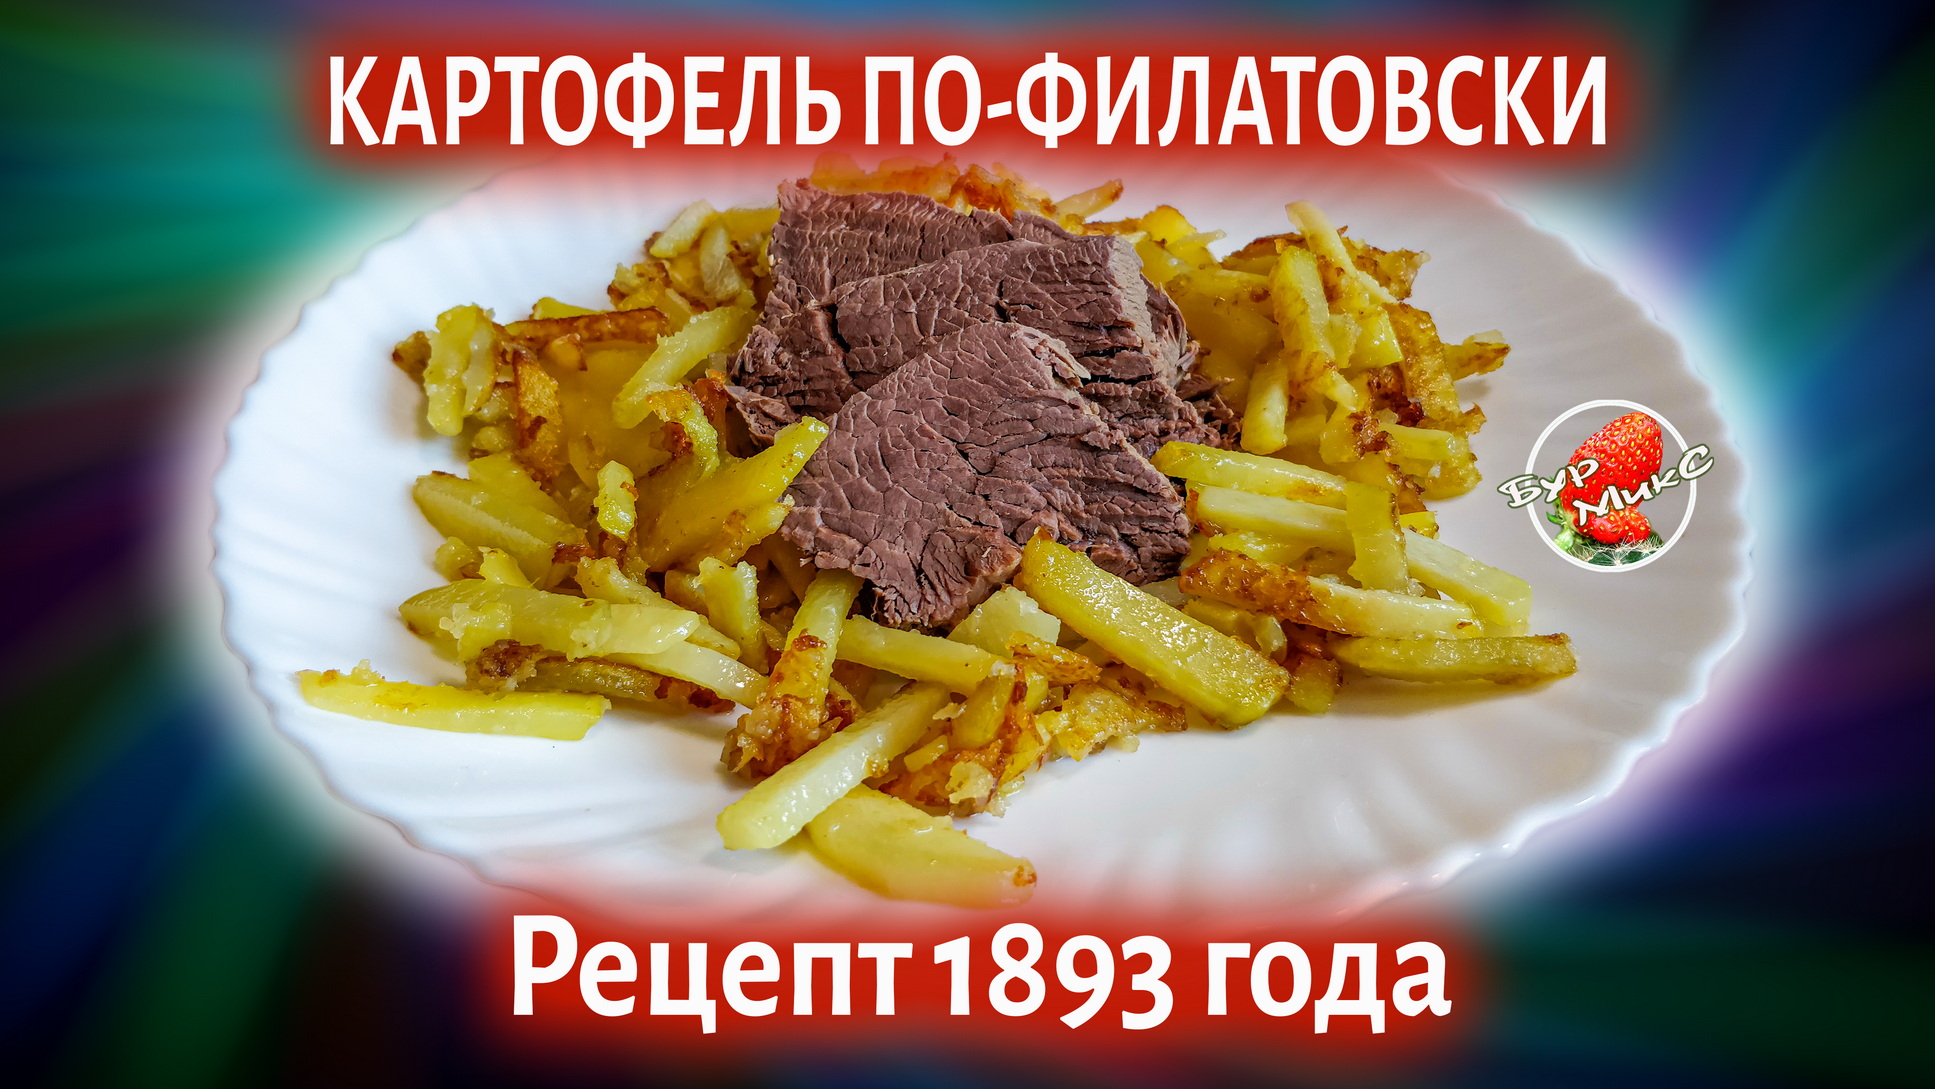 РУССКАЯ КУХНЯ ❤️ Жареный картофель по-Филатовски, рецепт 1893 года